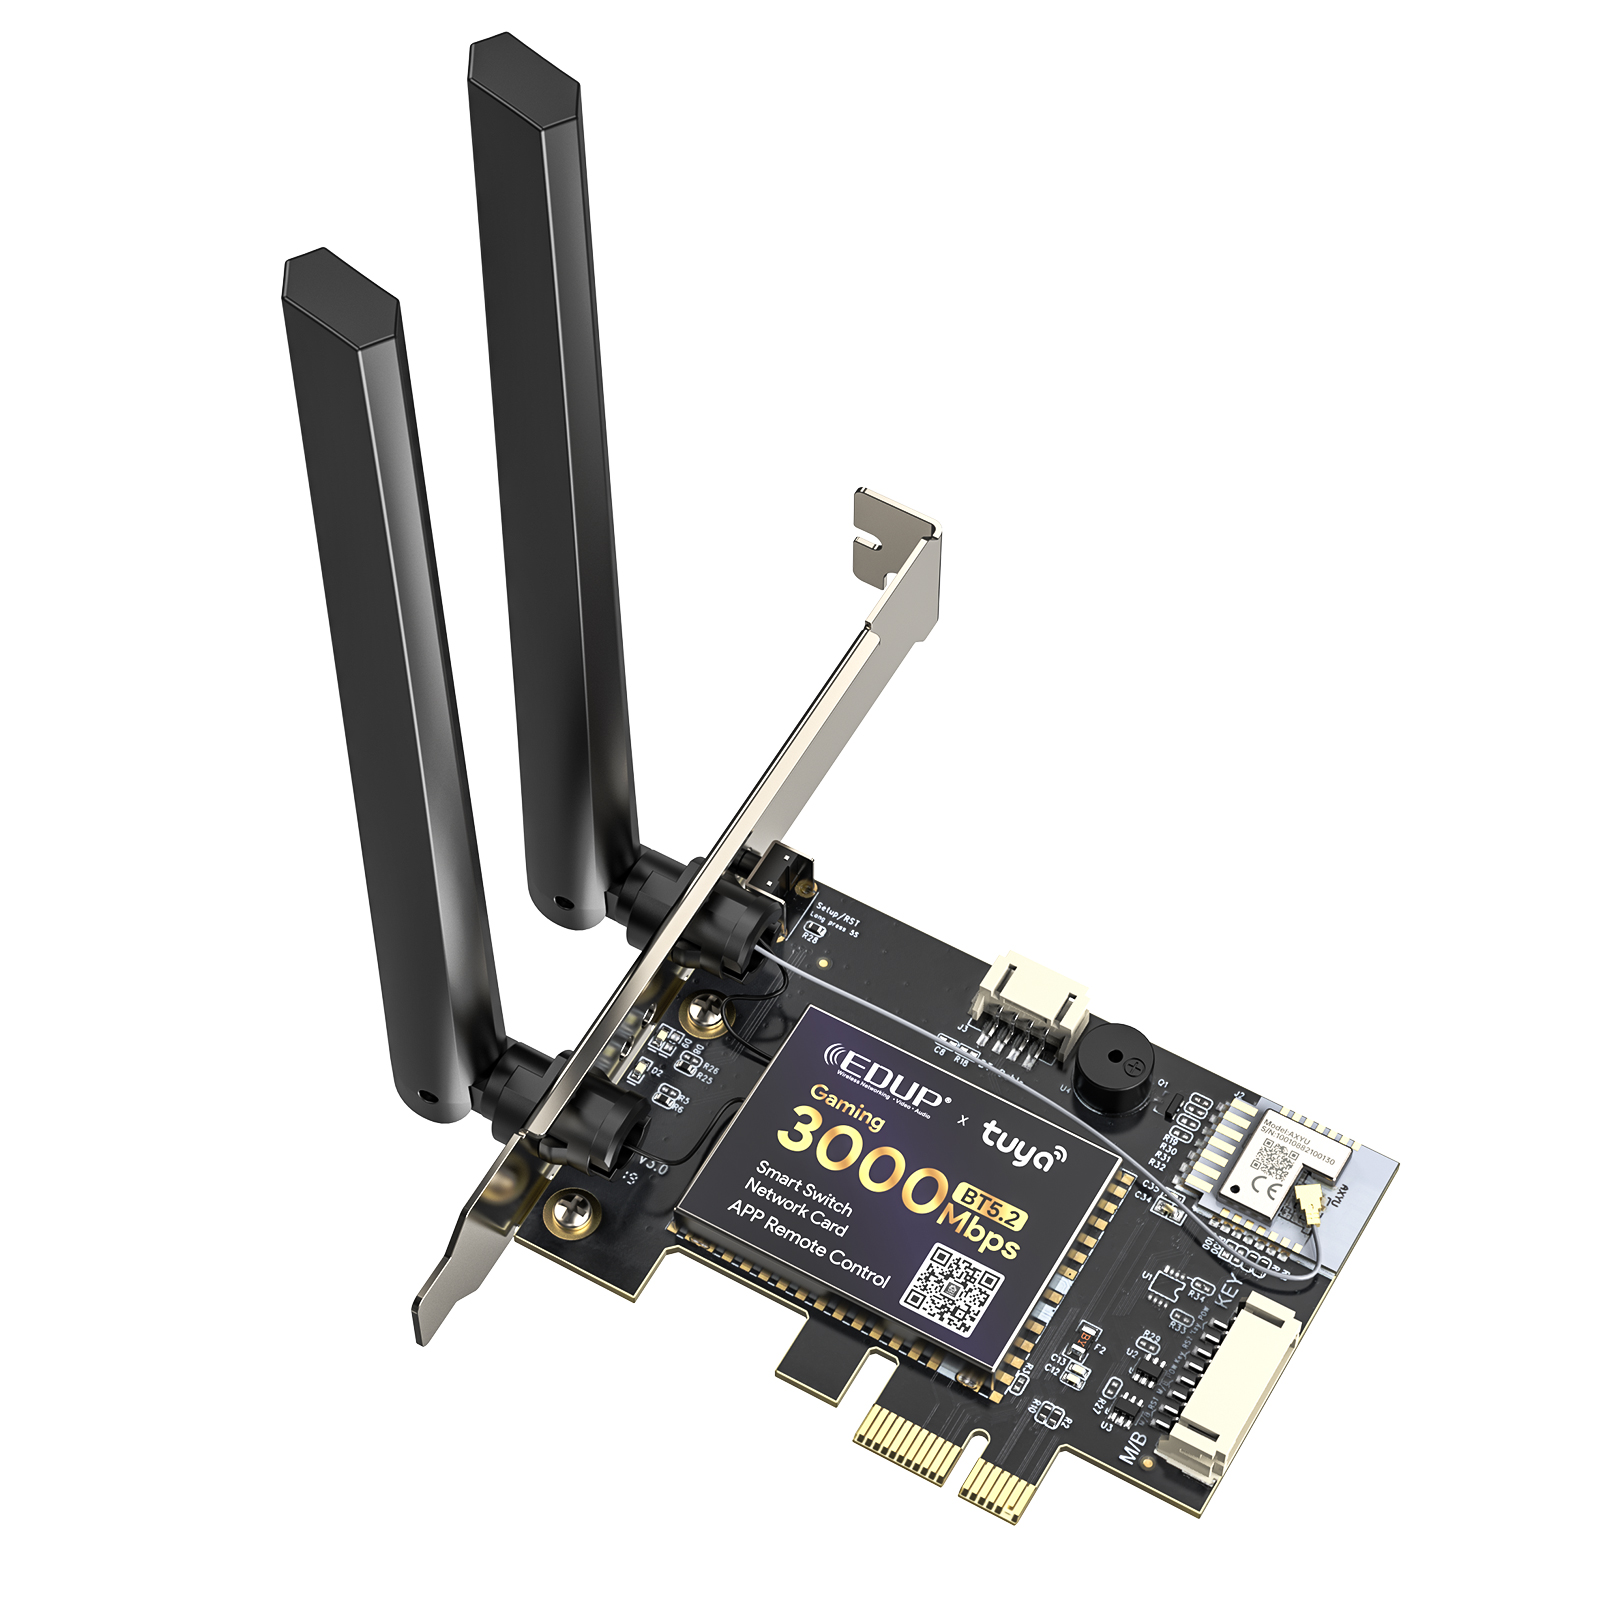 PCI-E Wireless Adapter